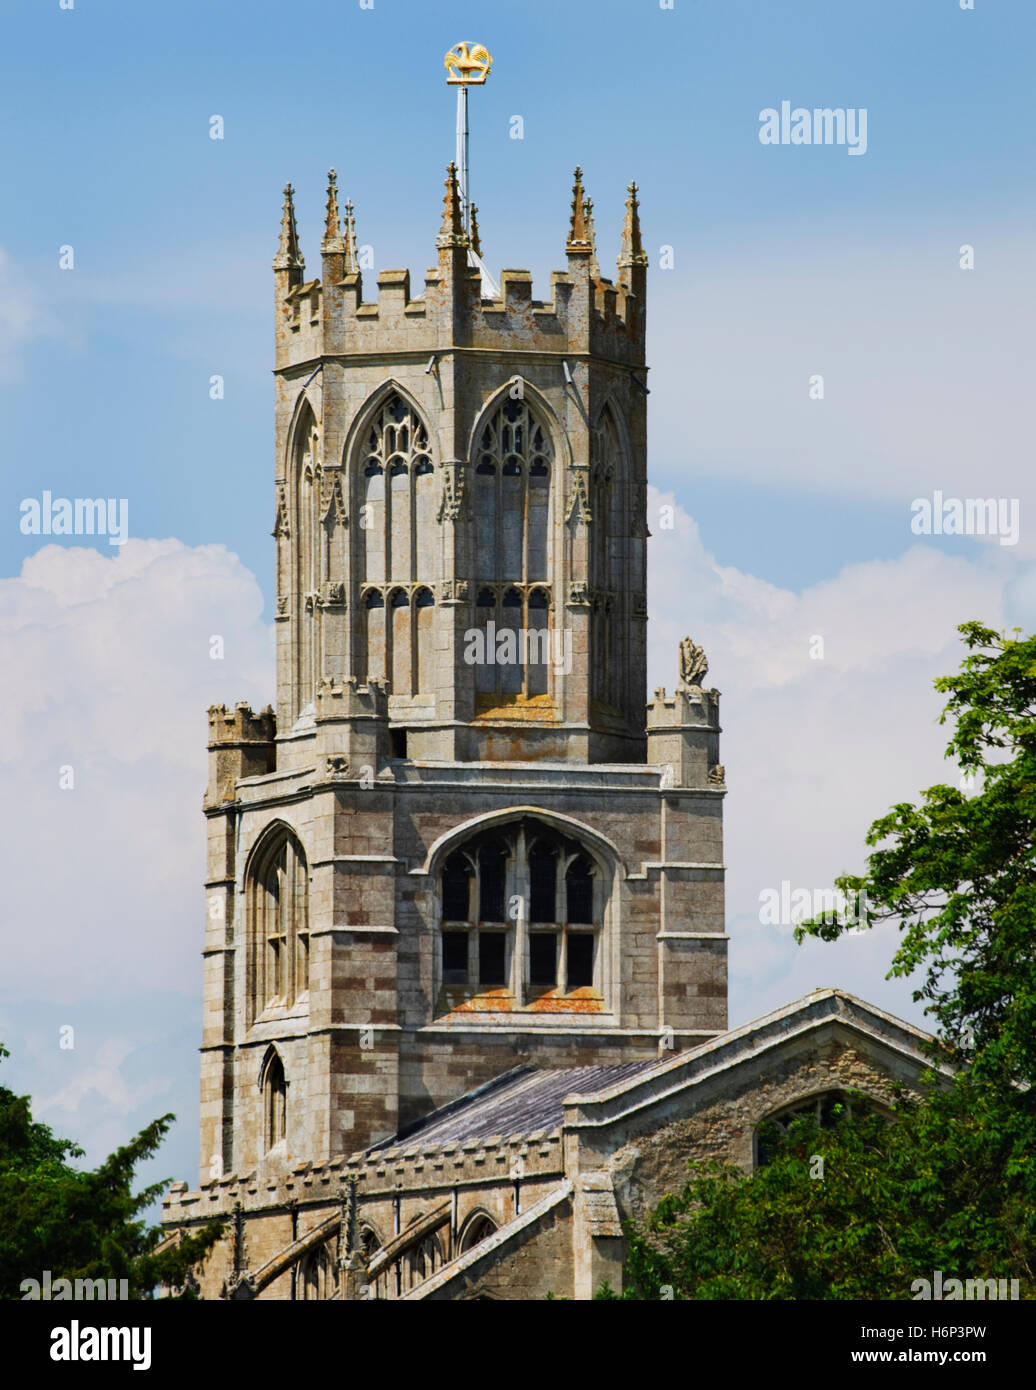 Turm & achteckigen Laterne Fotheringhay C15th Kirche, Northamptonshire, gekrönt von einer goldenen Falken & Fetterlock, heraldische Abzeichen des Hauses York Stockfoto